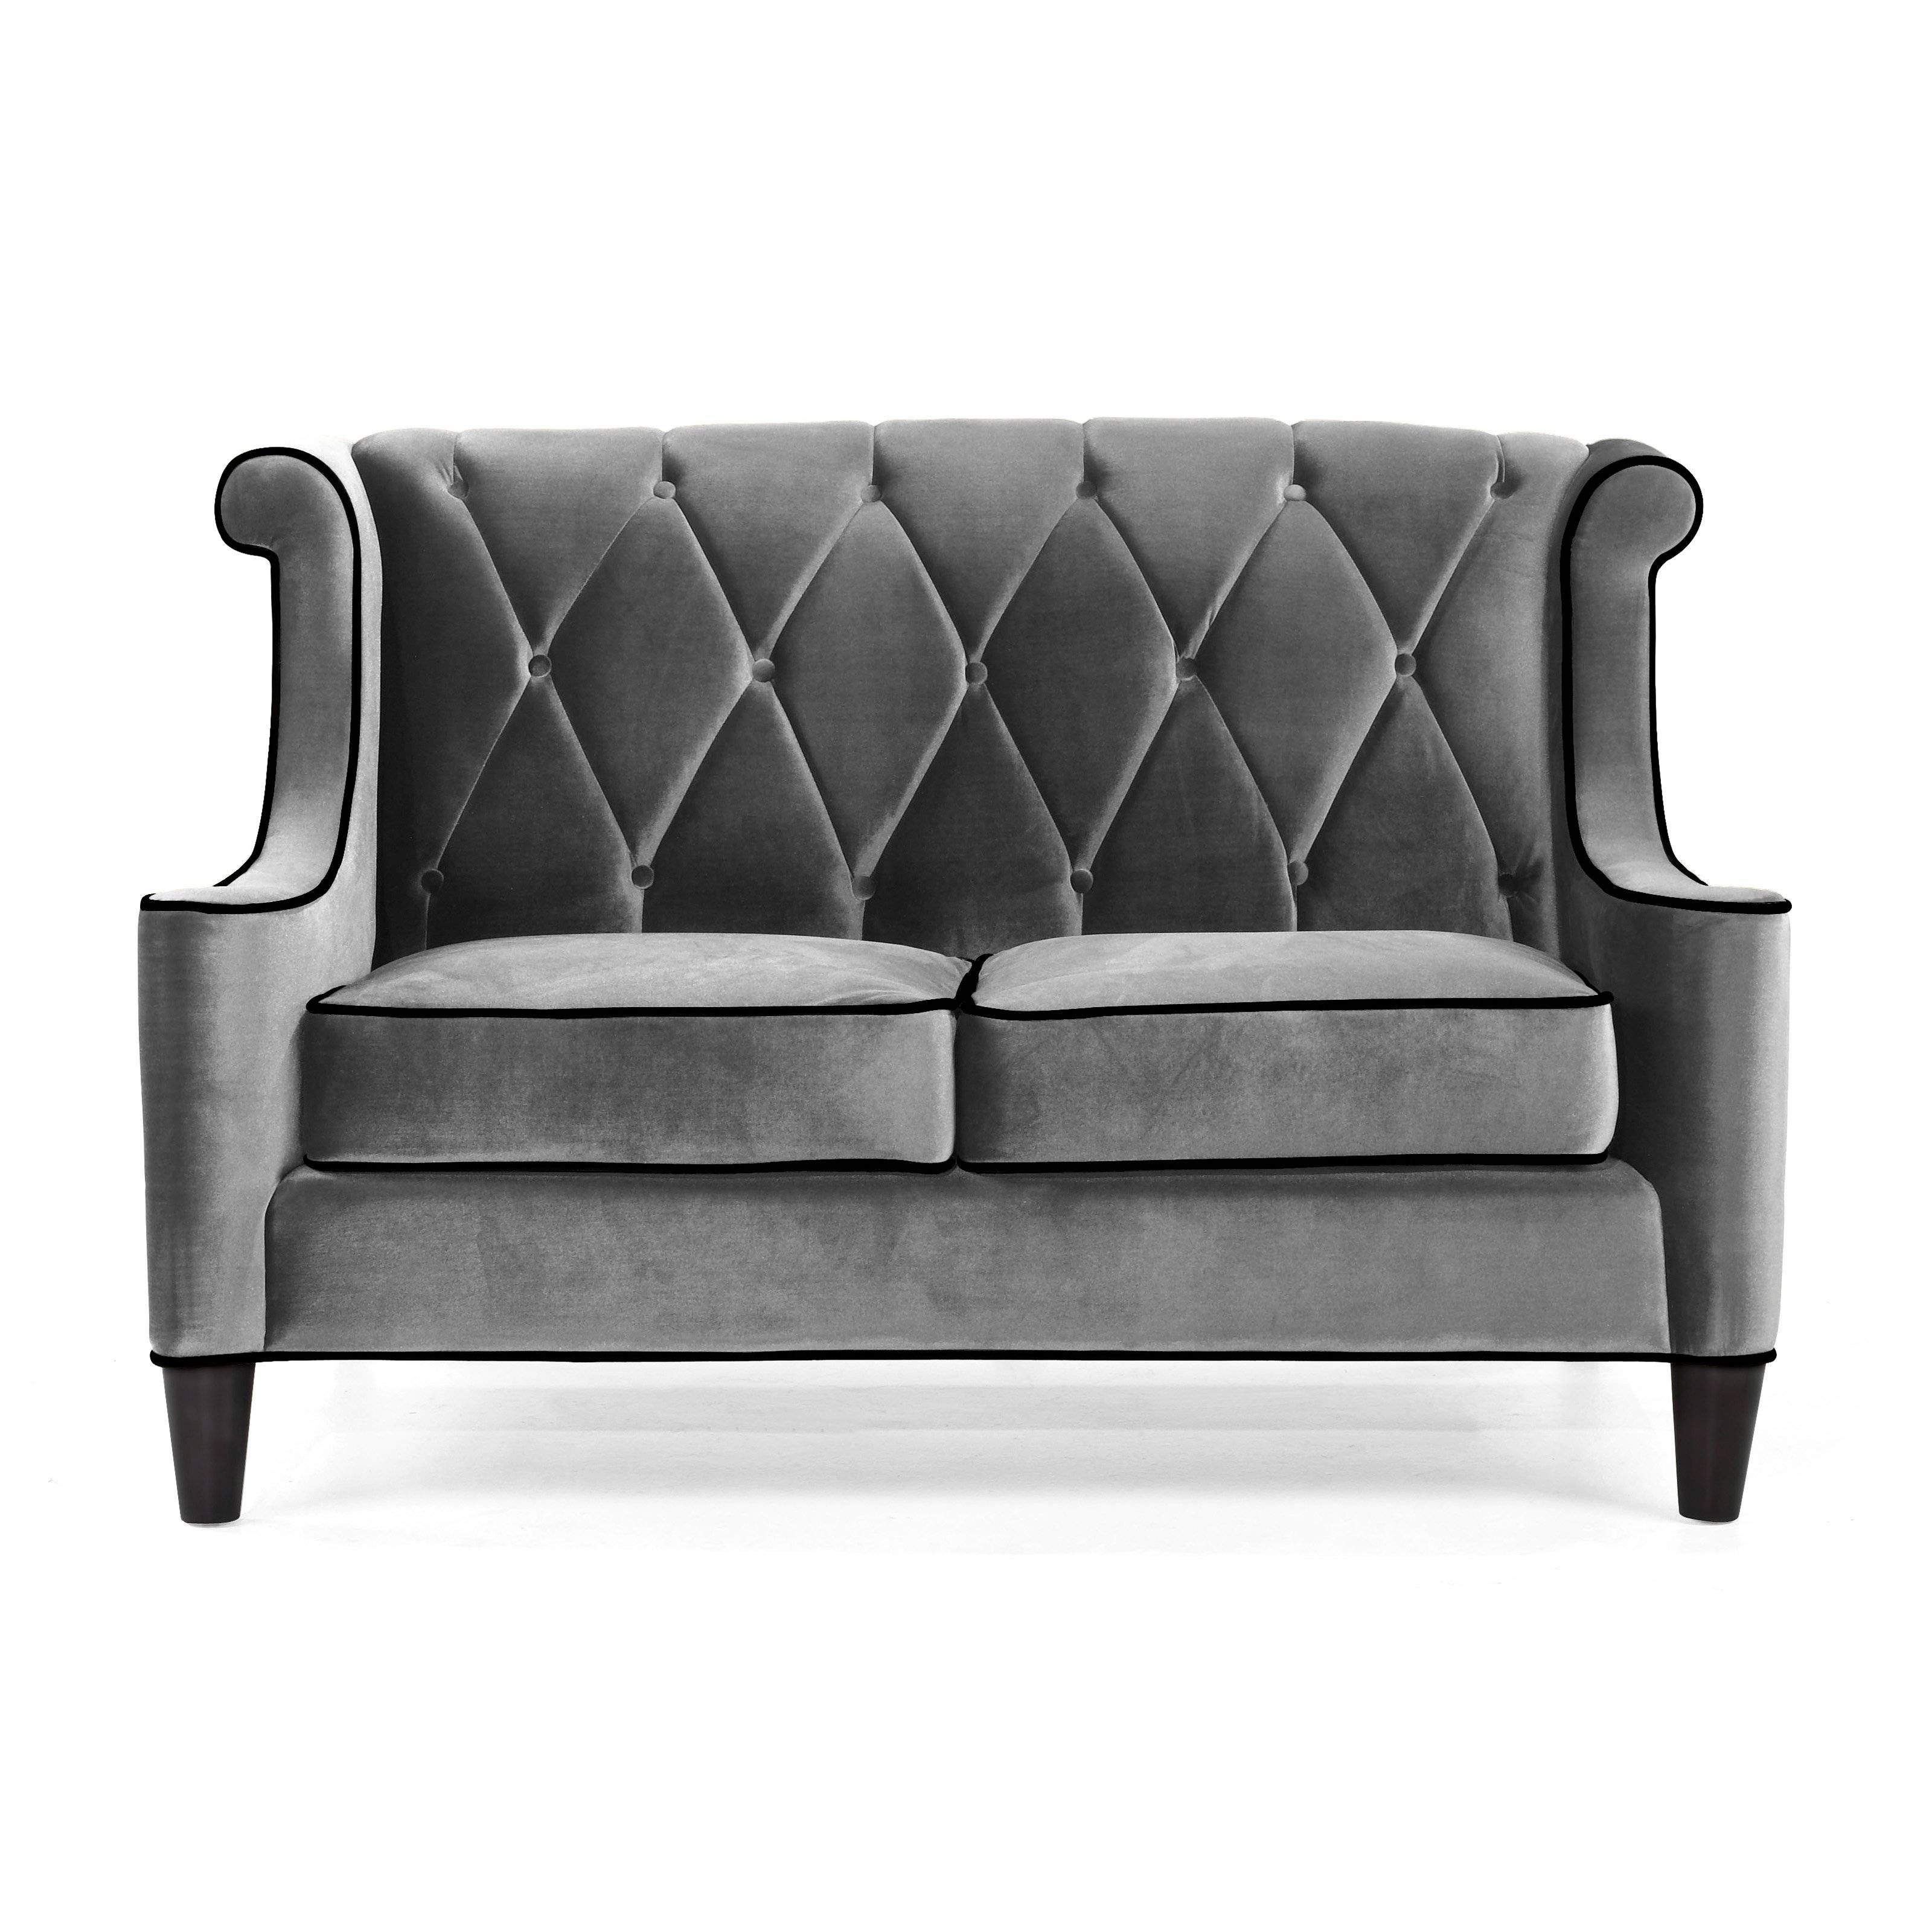 Armen Living Barrister Gray Velvet Sofa | Hayneedle Inside Gray Sofas (View 14 of 15)